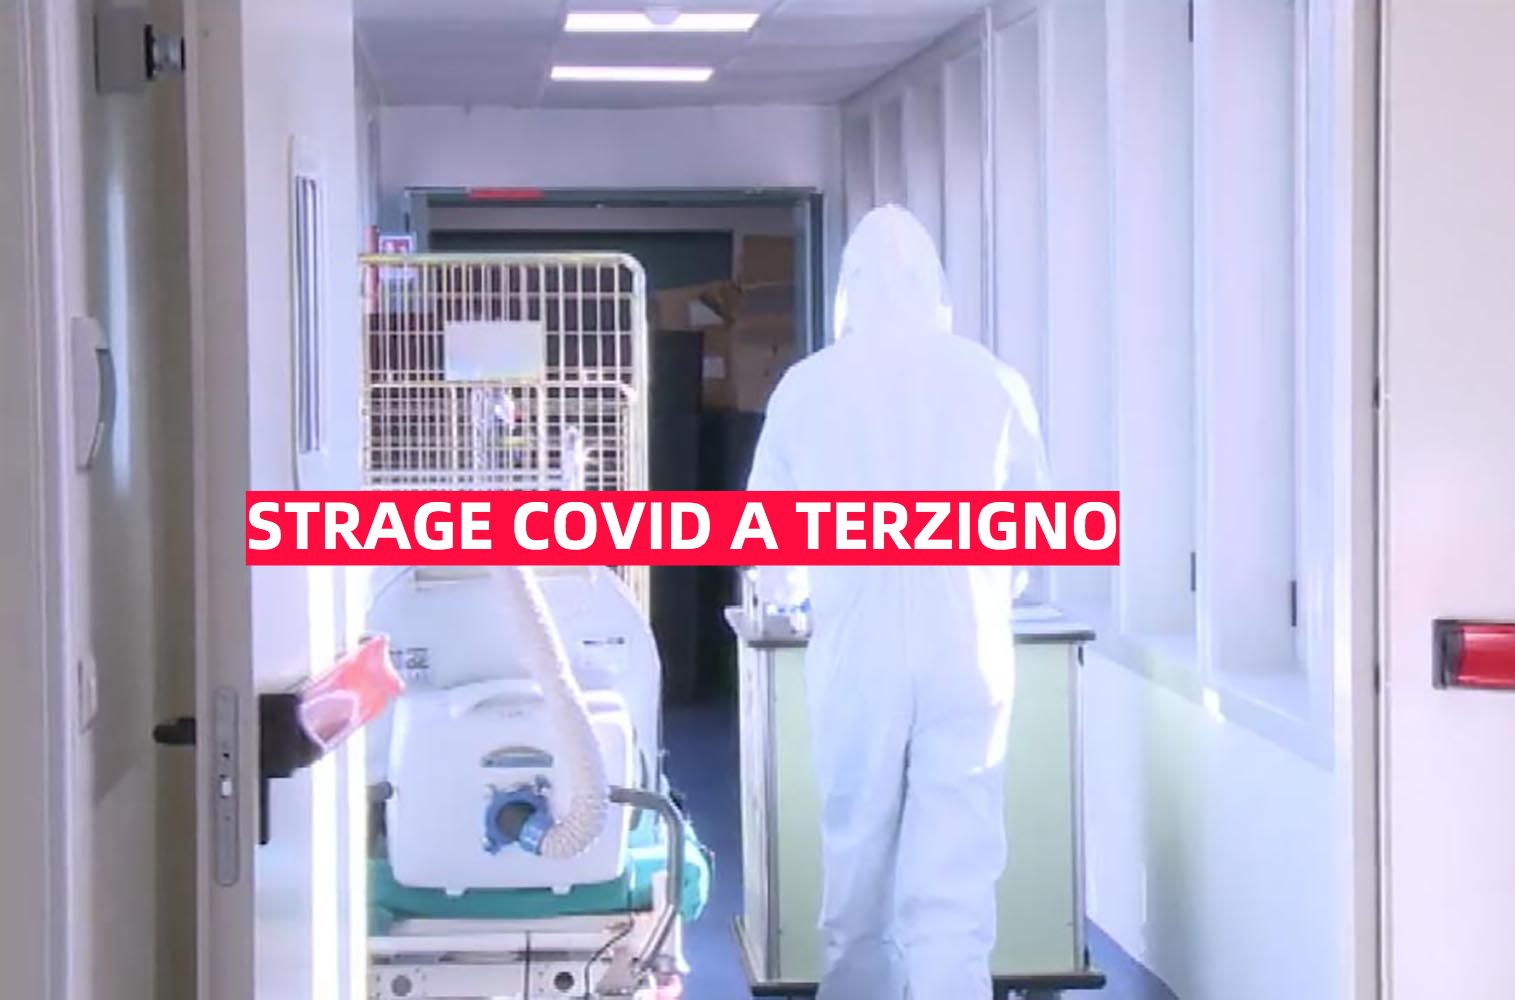 Cinque vittime covid in 48 ore: scatta l’allarme a Terzigno